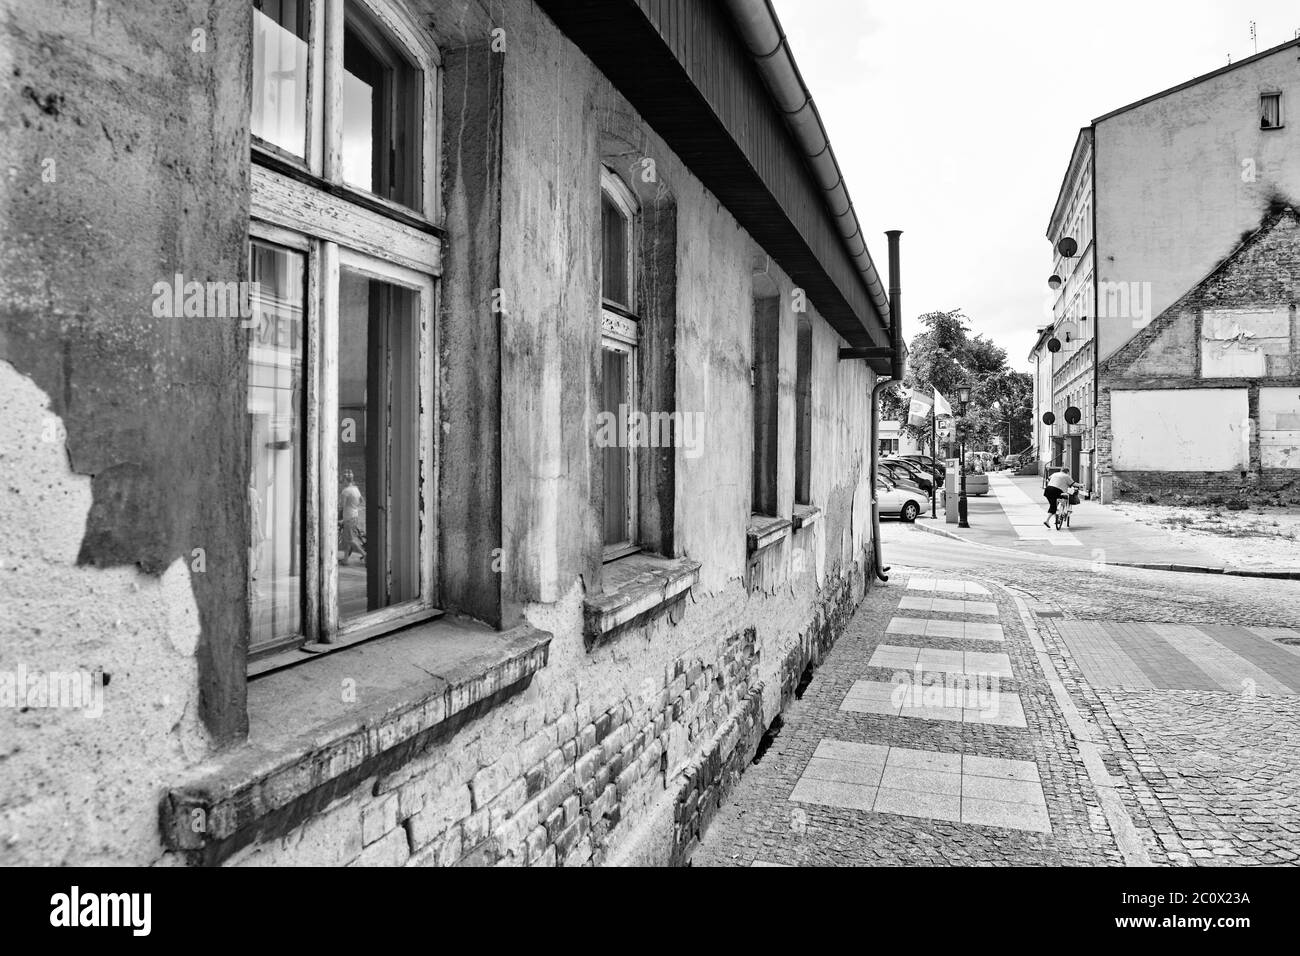 Schönes Architekturbeispiel in der polnischen Altstadt, Grodzisk Wielkopolski, Polen. Stockfoto